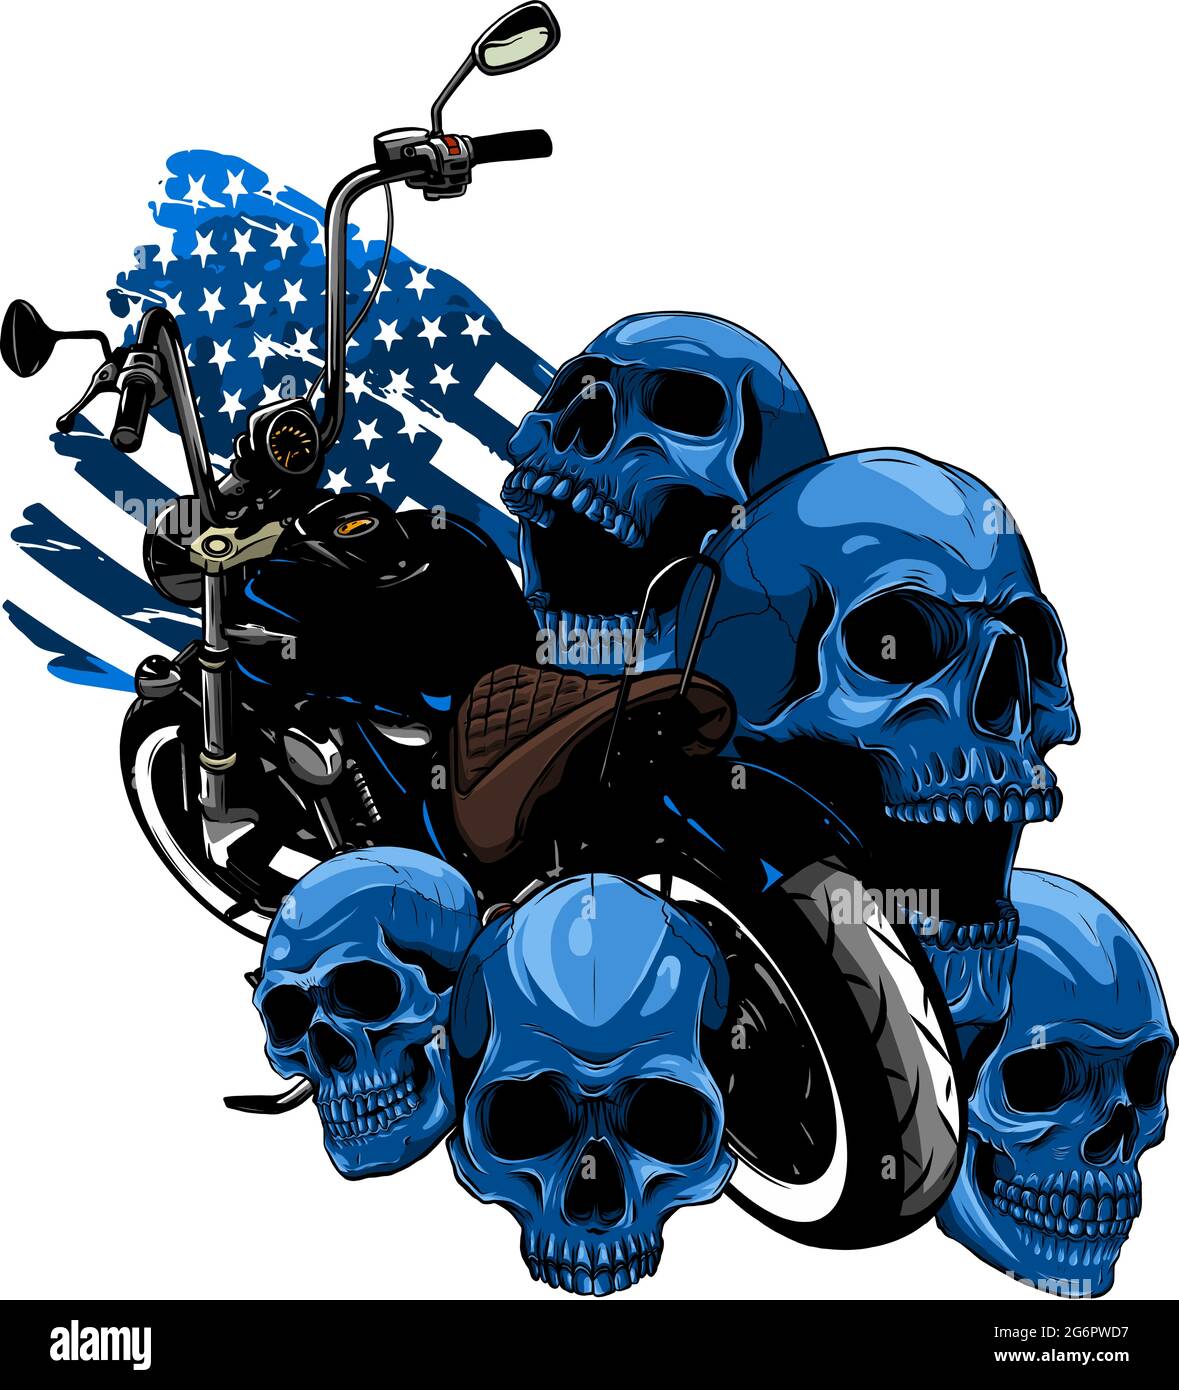 vecteur moto avec crânes et drapeau américain Illustration de Vecteur